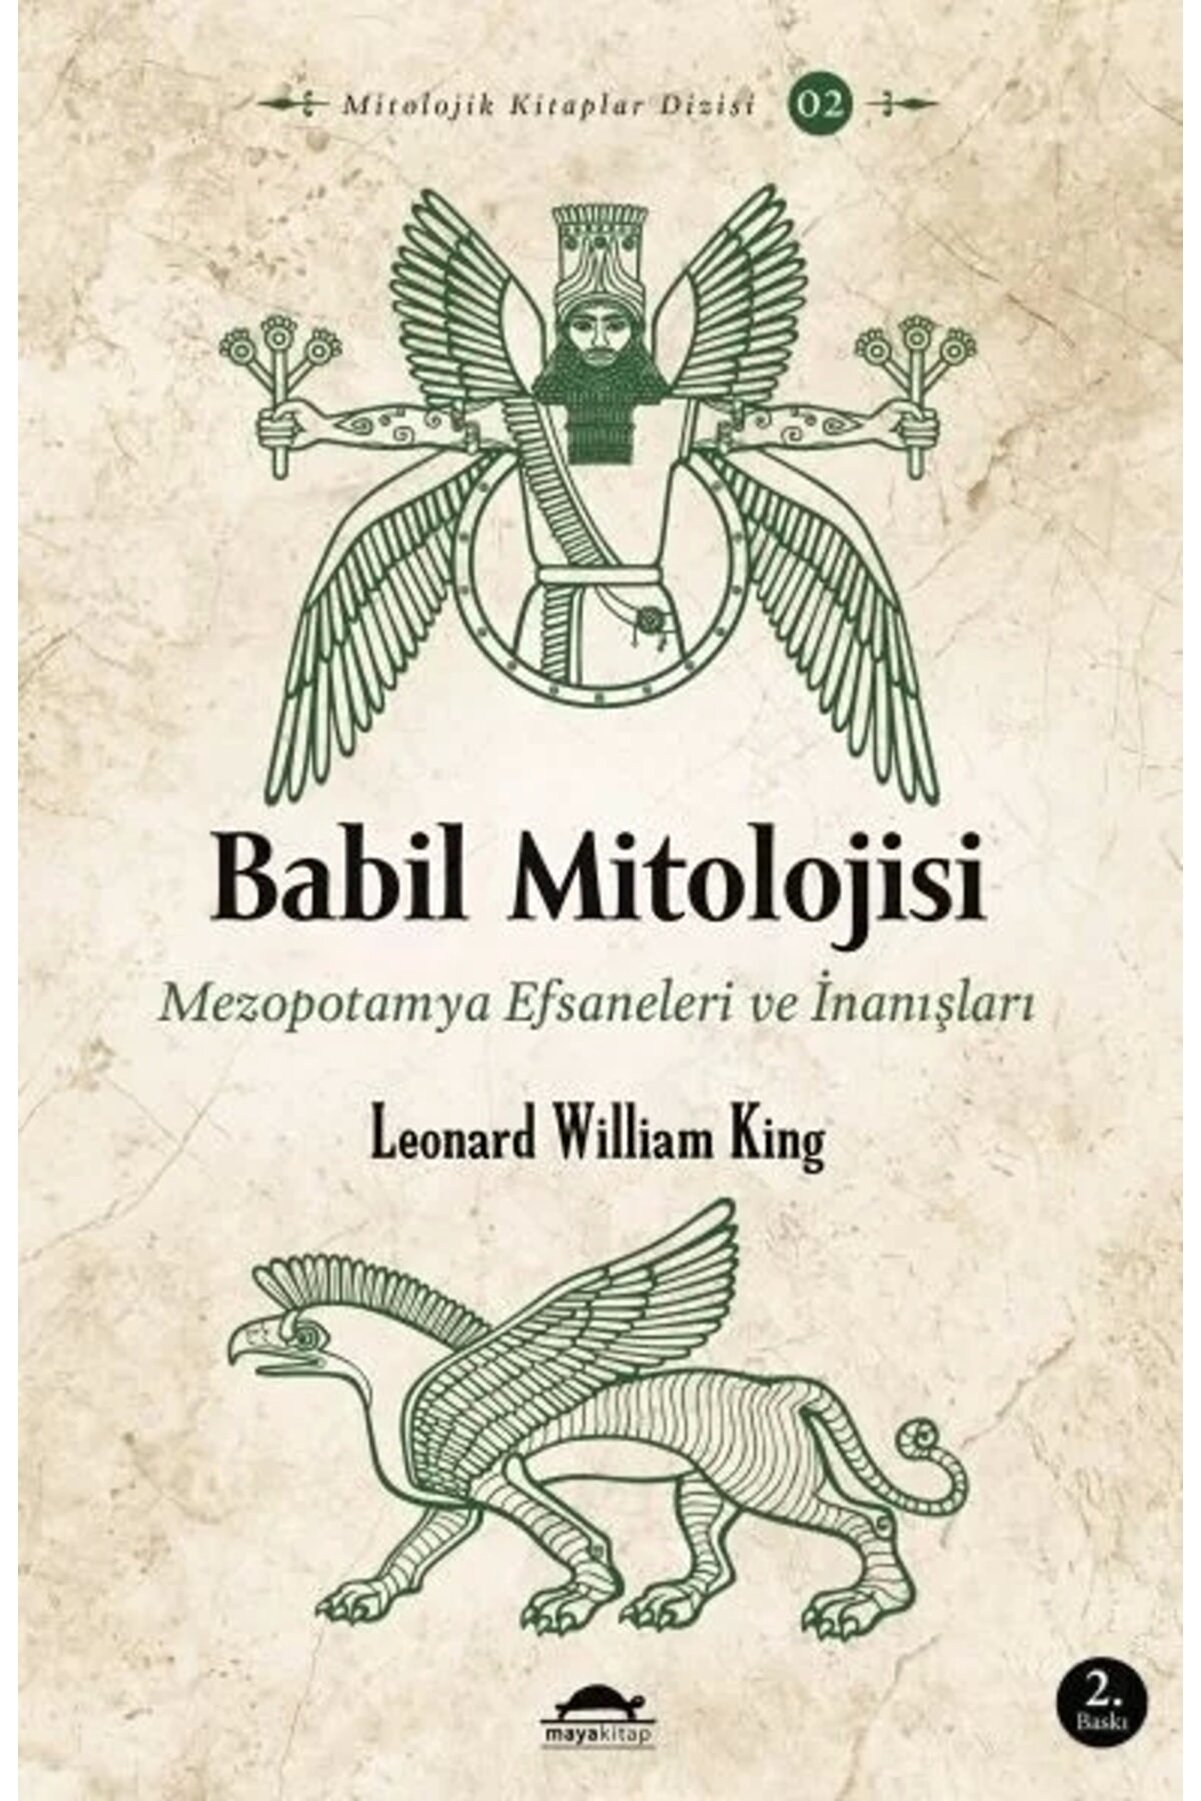 Maya Kitap Babil Mitolojisi - Mezopotamya Efsaneleri Ve Inanışları - Mitolojik Kitaplar Dizisi 2